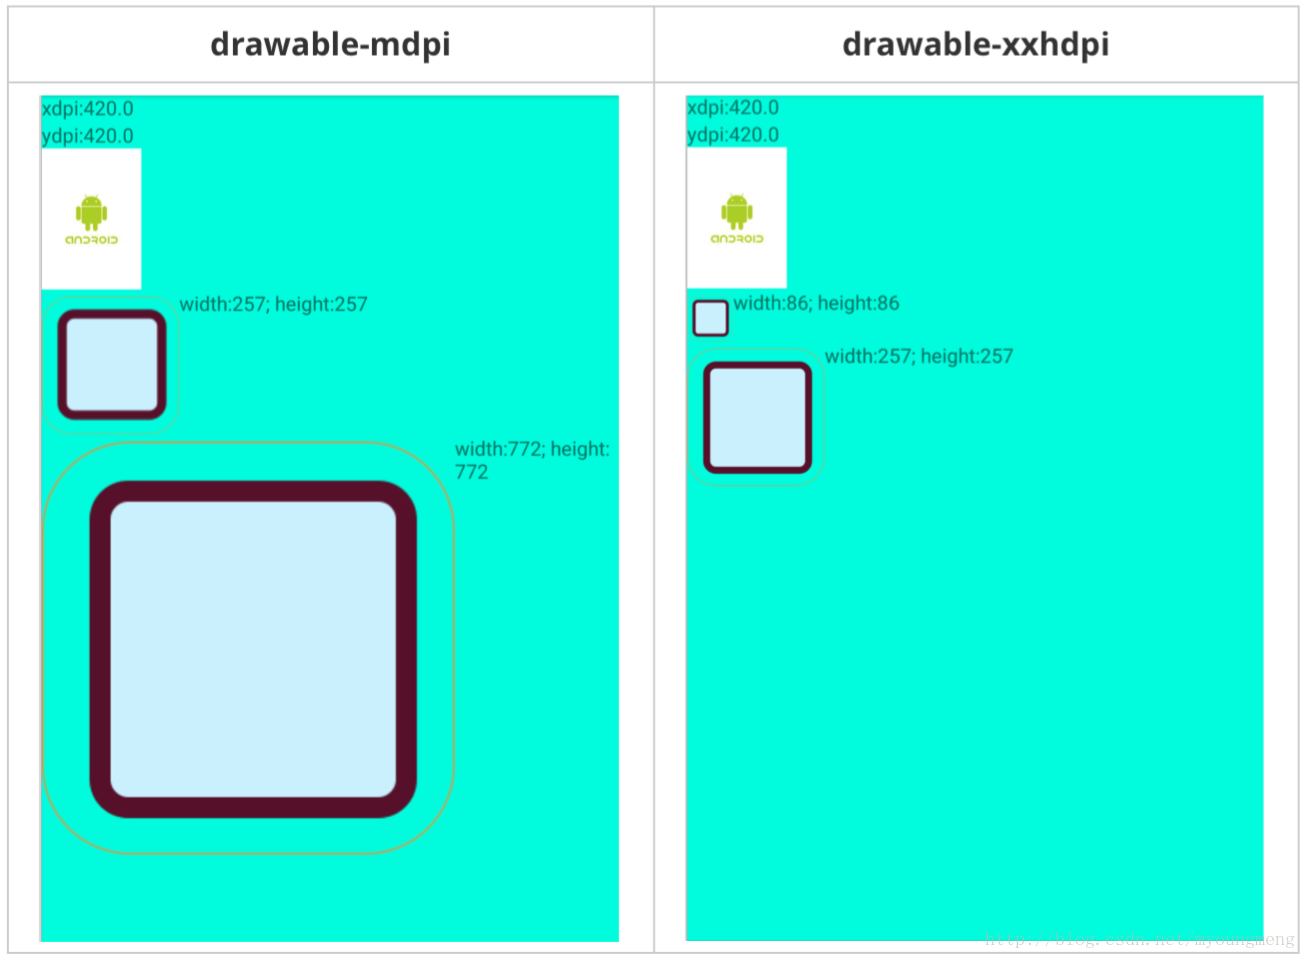 1倍图和3倍图在分别在drawable-mdpi和drawable-xxhdpi目录下的显示效果及宽高